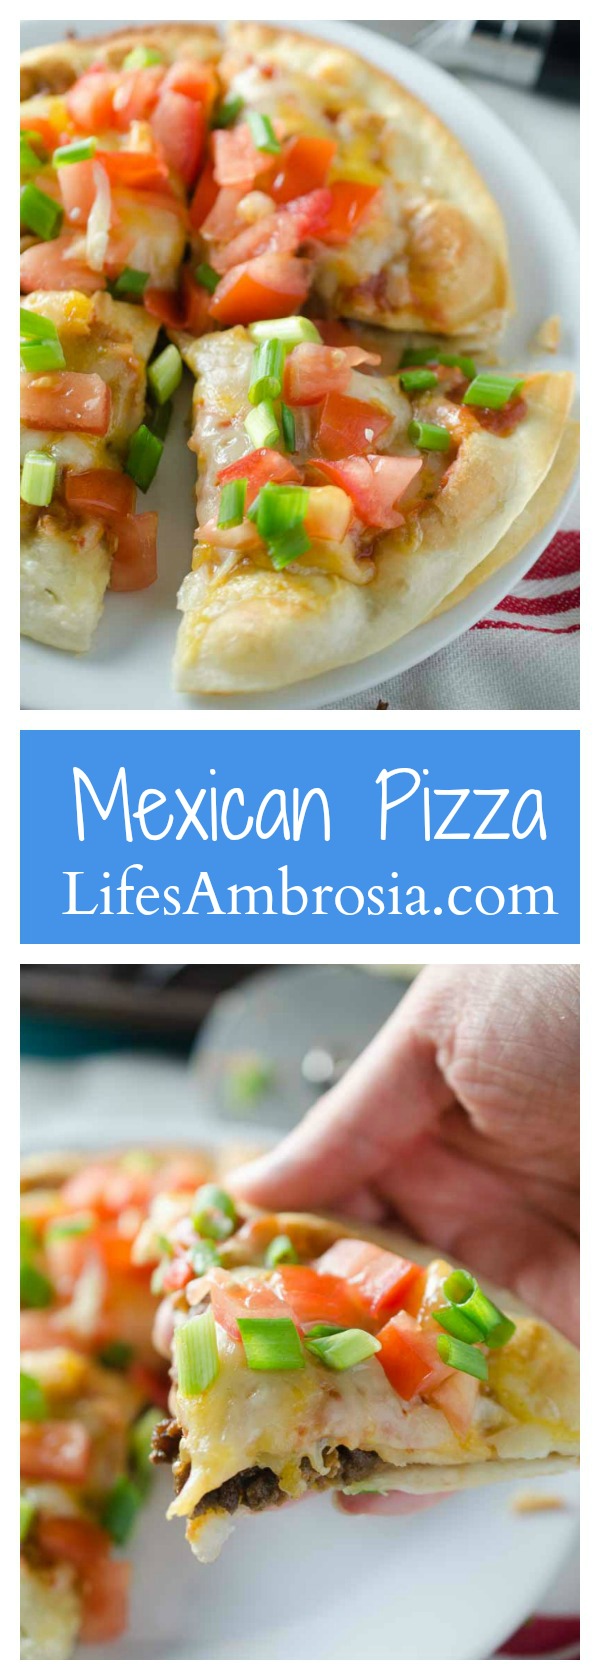 Mexican Pizza - Life's Ambrosia